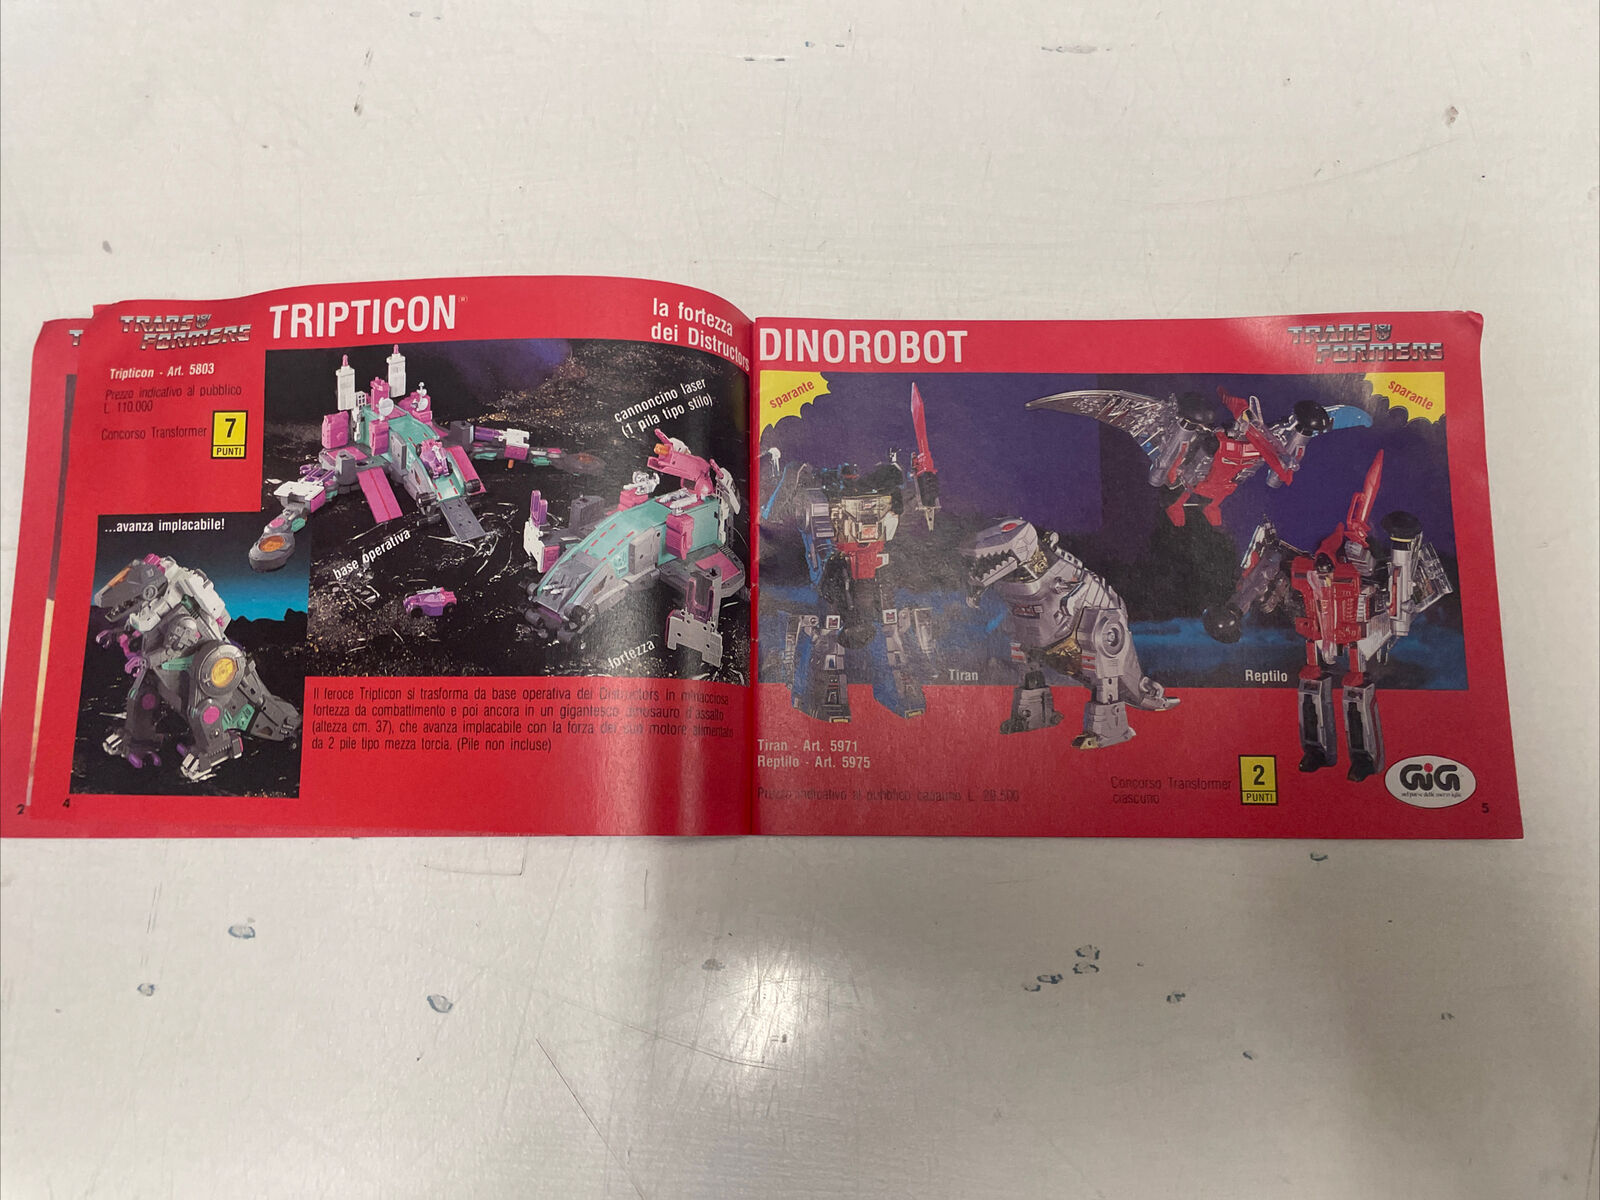 Transformers-catalogo-Anni-80-GIG-Giochiamo-a-Trasformer-145340679071-3